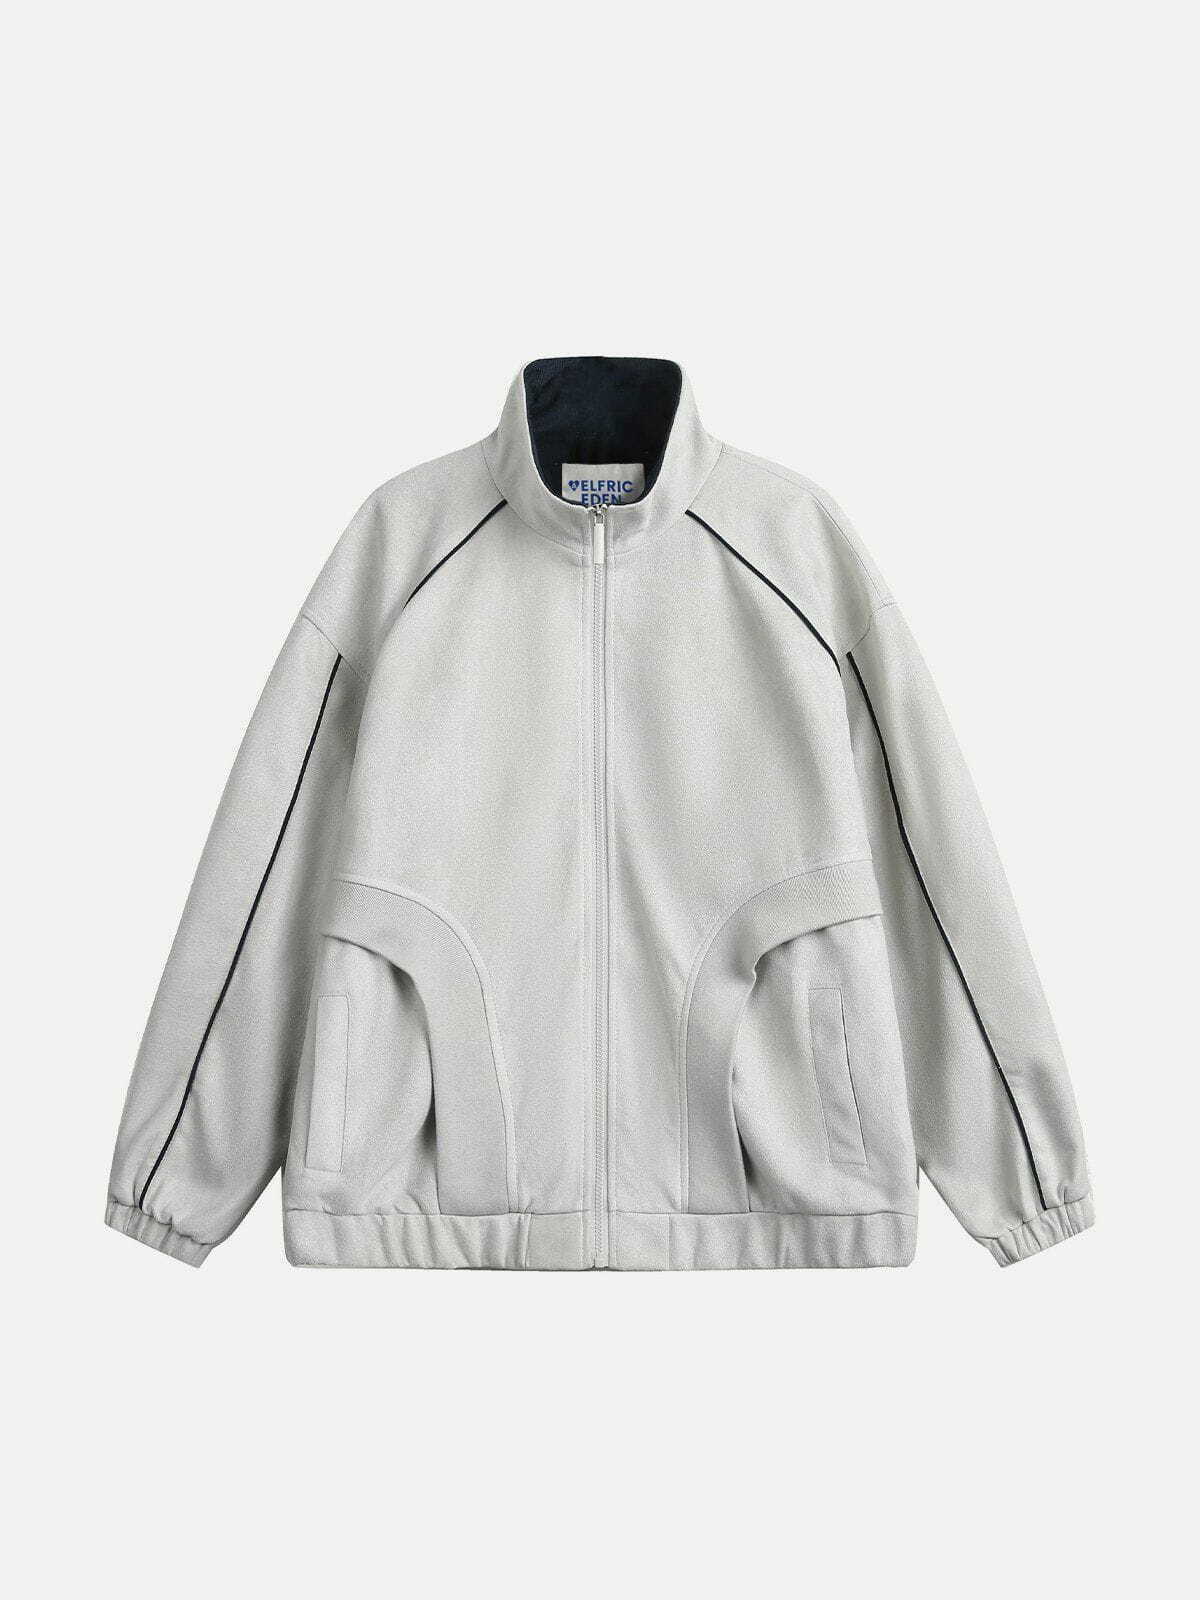 retro line patchwork suede jacket   urban chic essential 1035